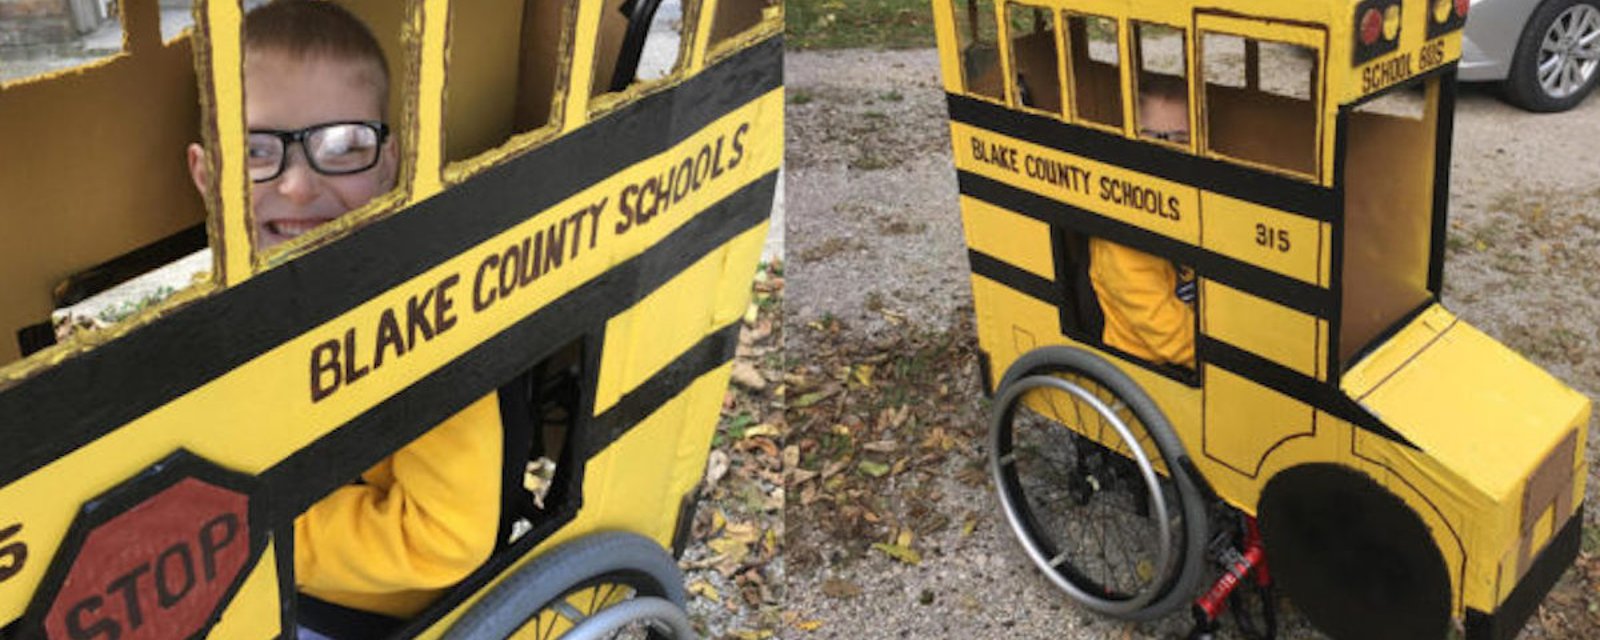 Un grand-papa crée un costume d’autobus scolaire entièrement fonctionnel pour que son petit-fils de 5 ans, en fauteuil roulant, puisse célébrer Halloween comme tous les autres enfants!